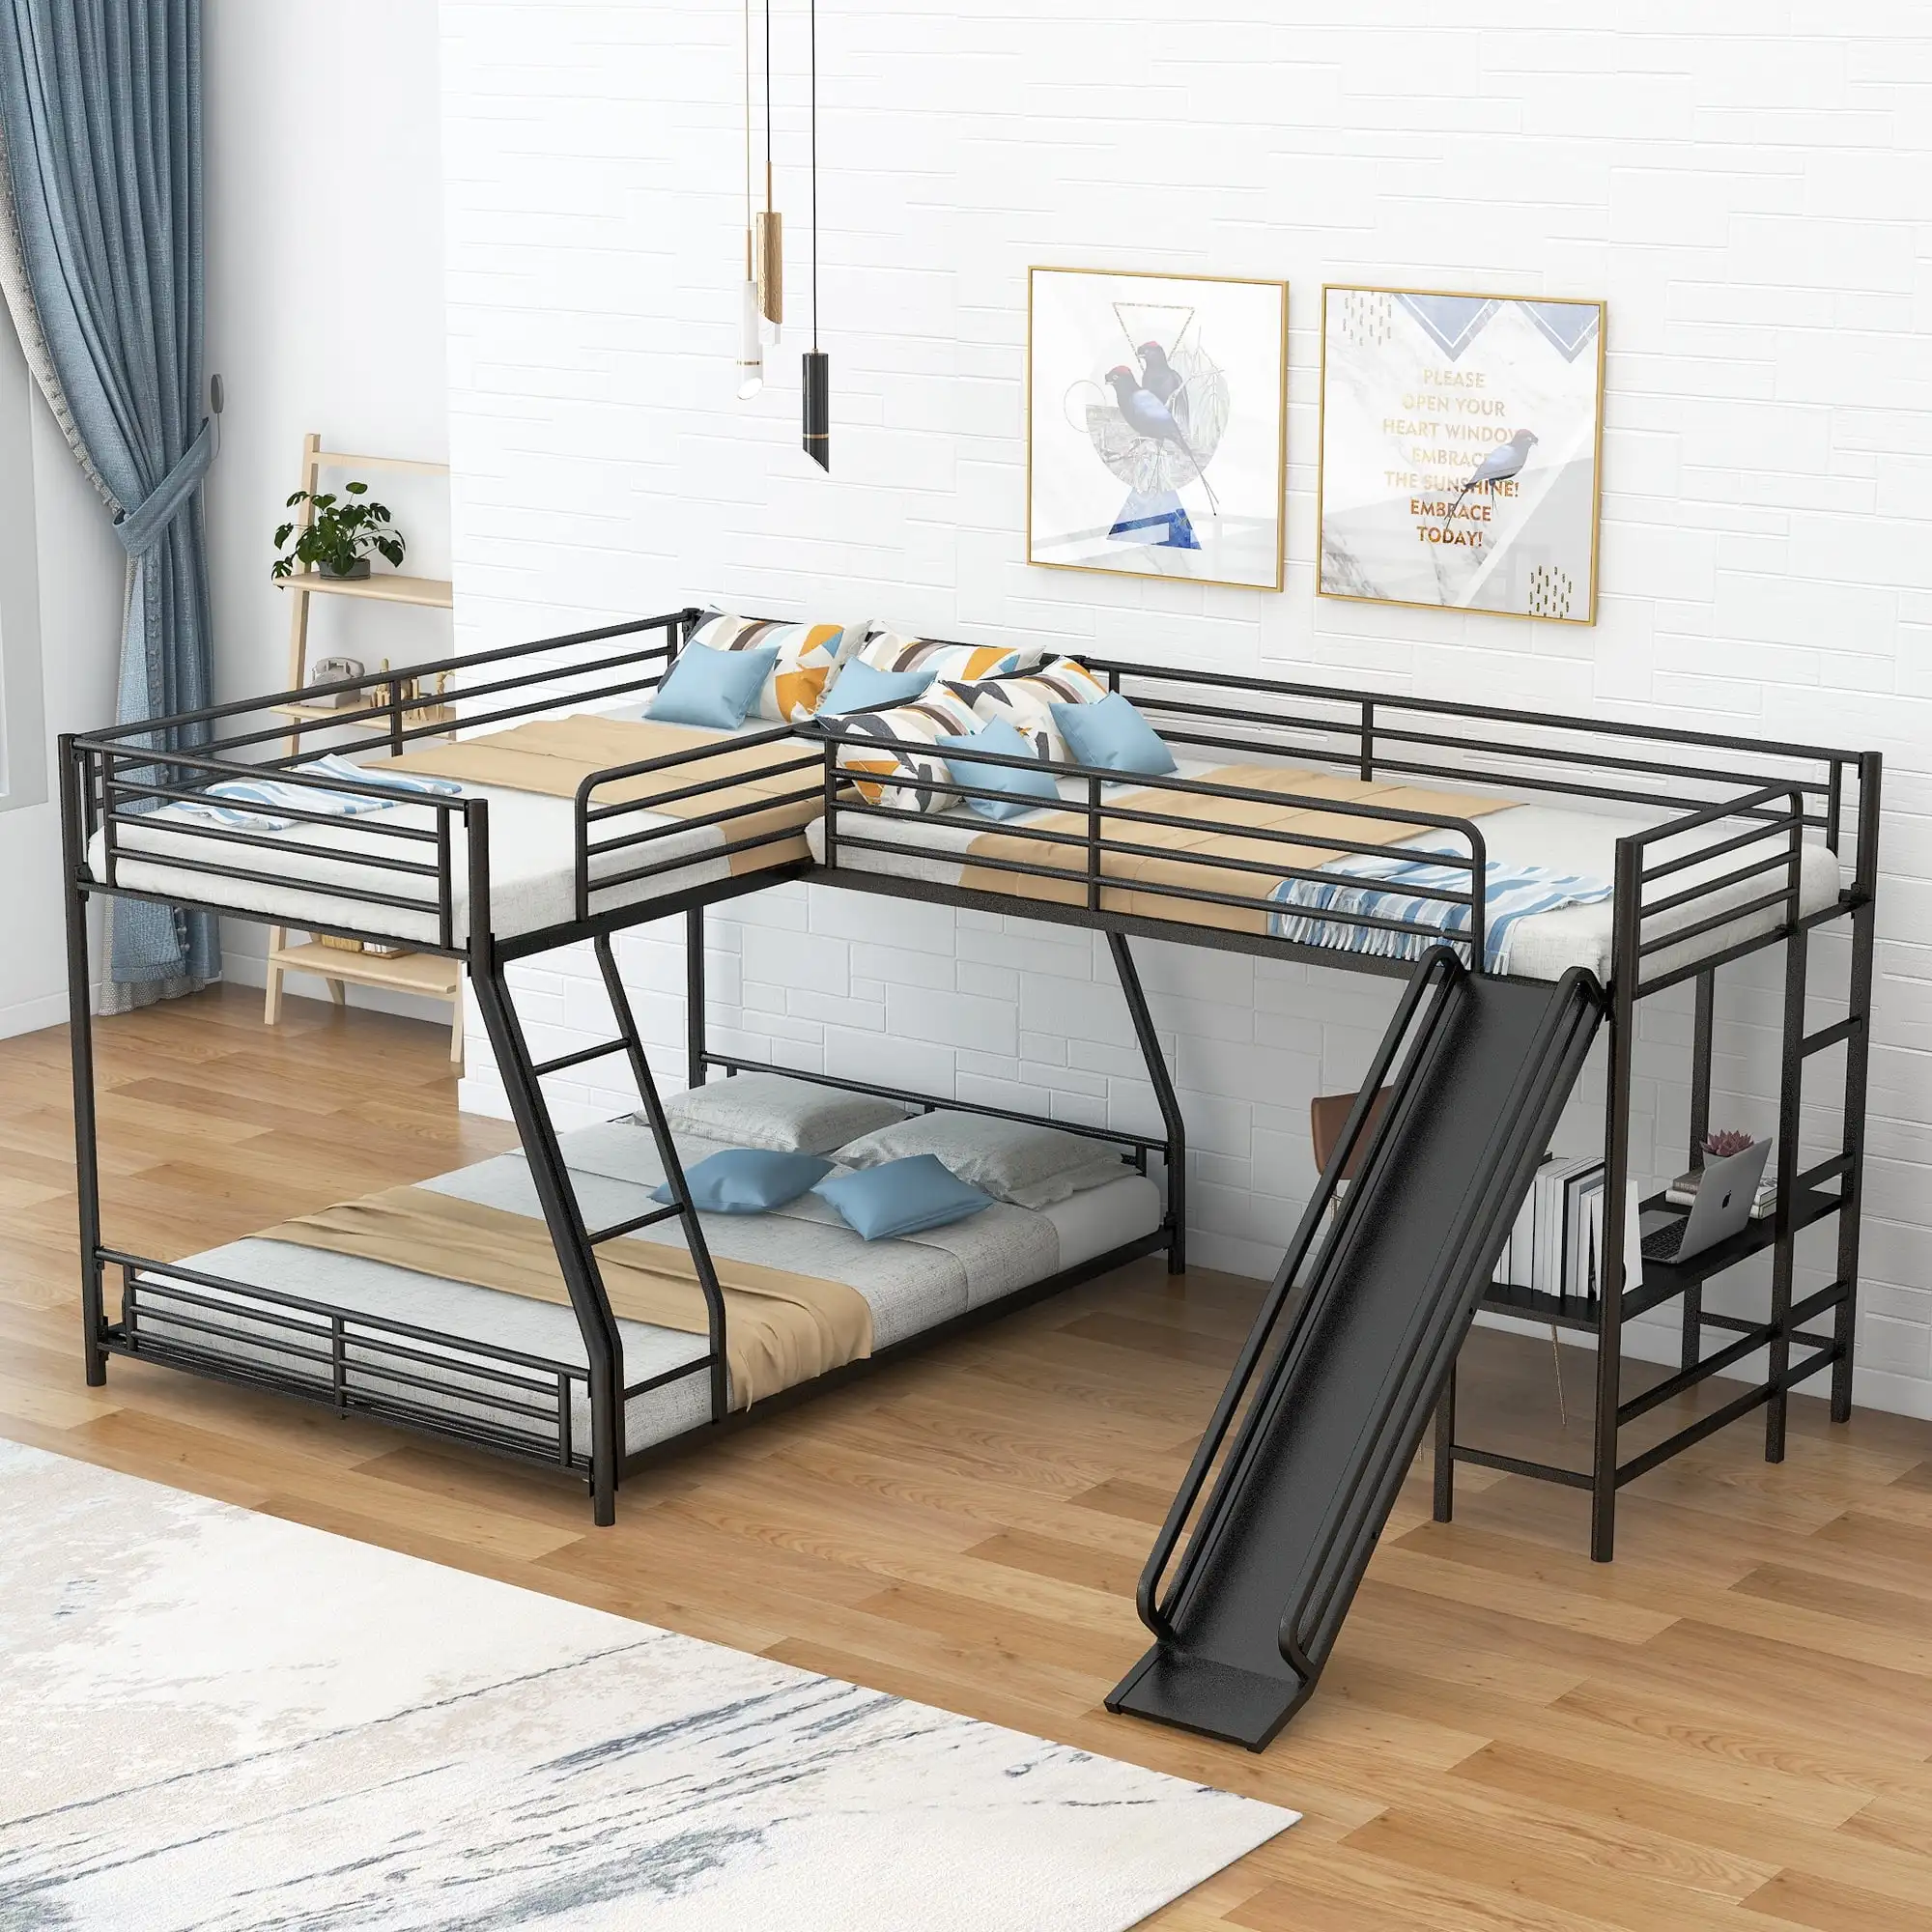 Метален L-образен близнак над пълно легло и таванско легло с бюро за деца, черно